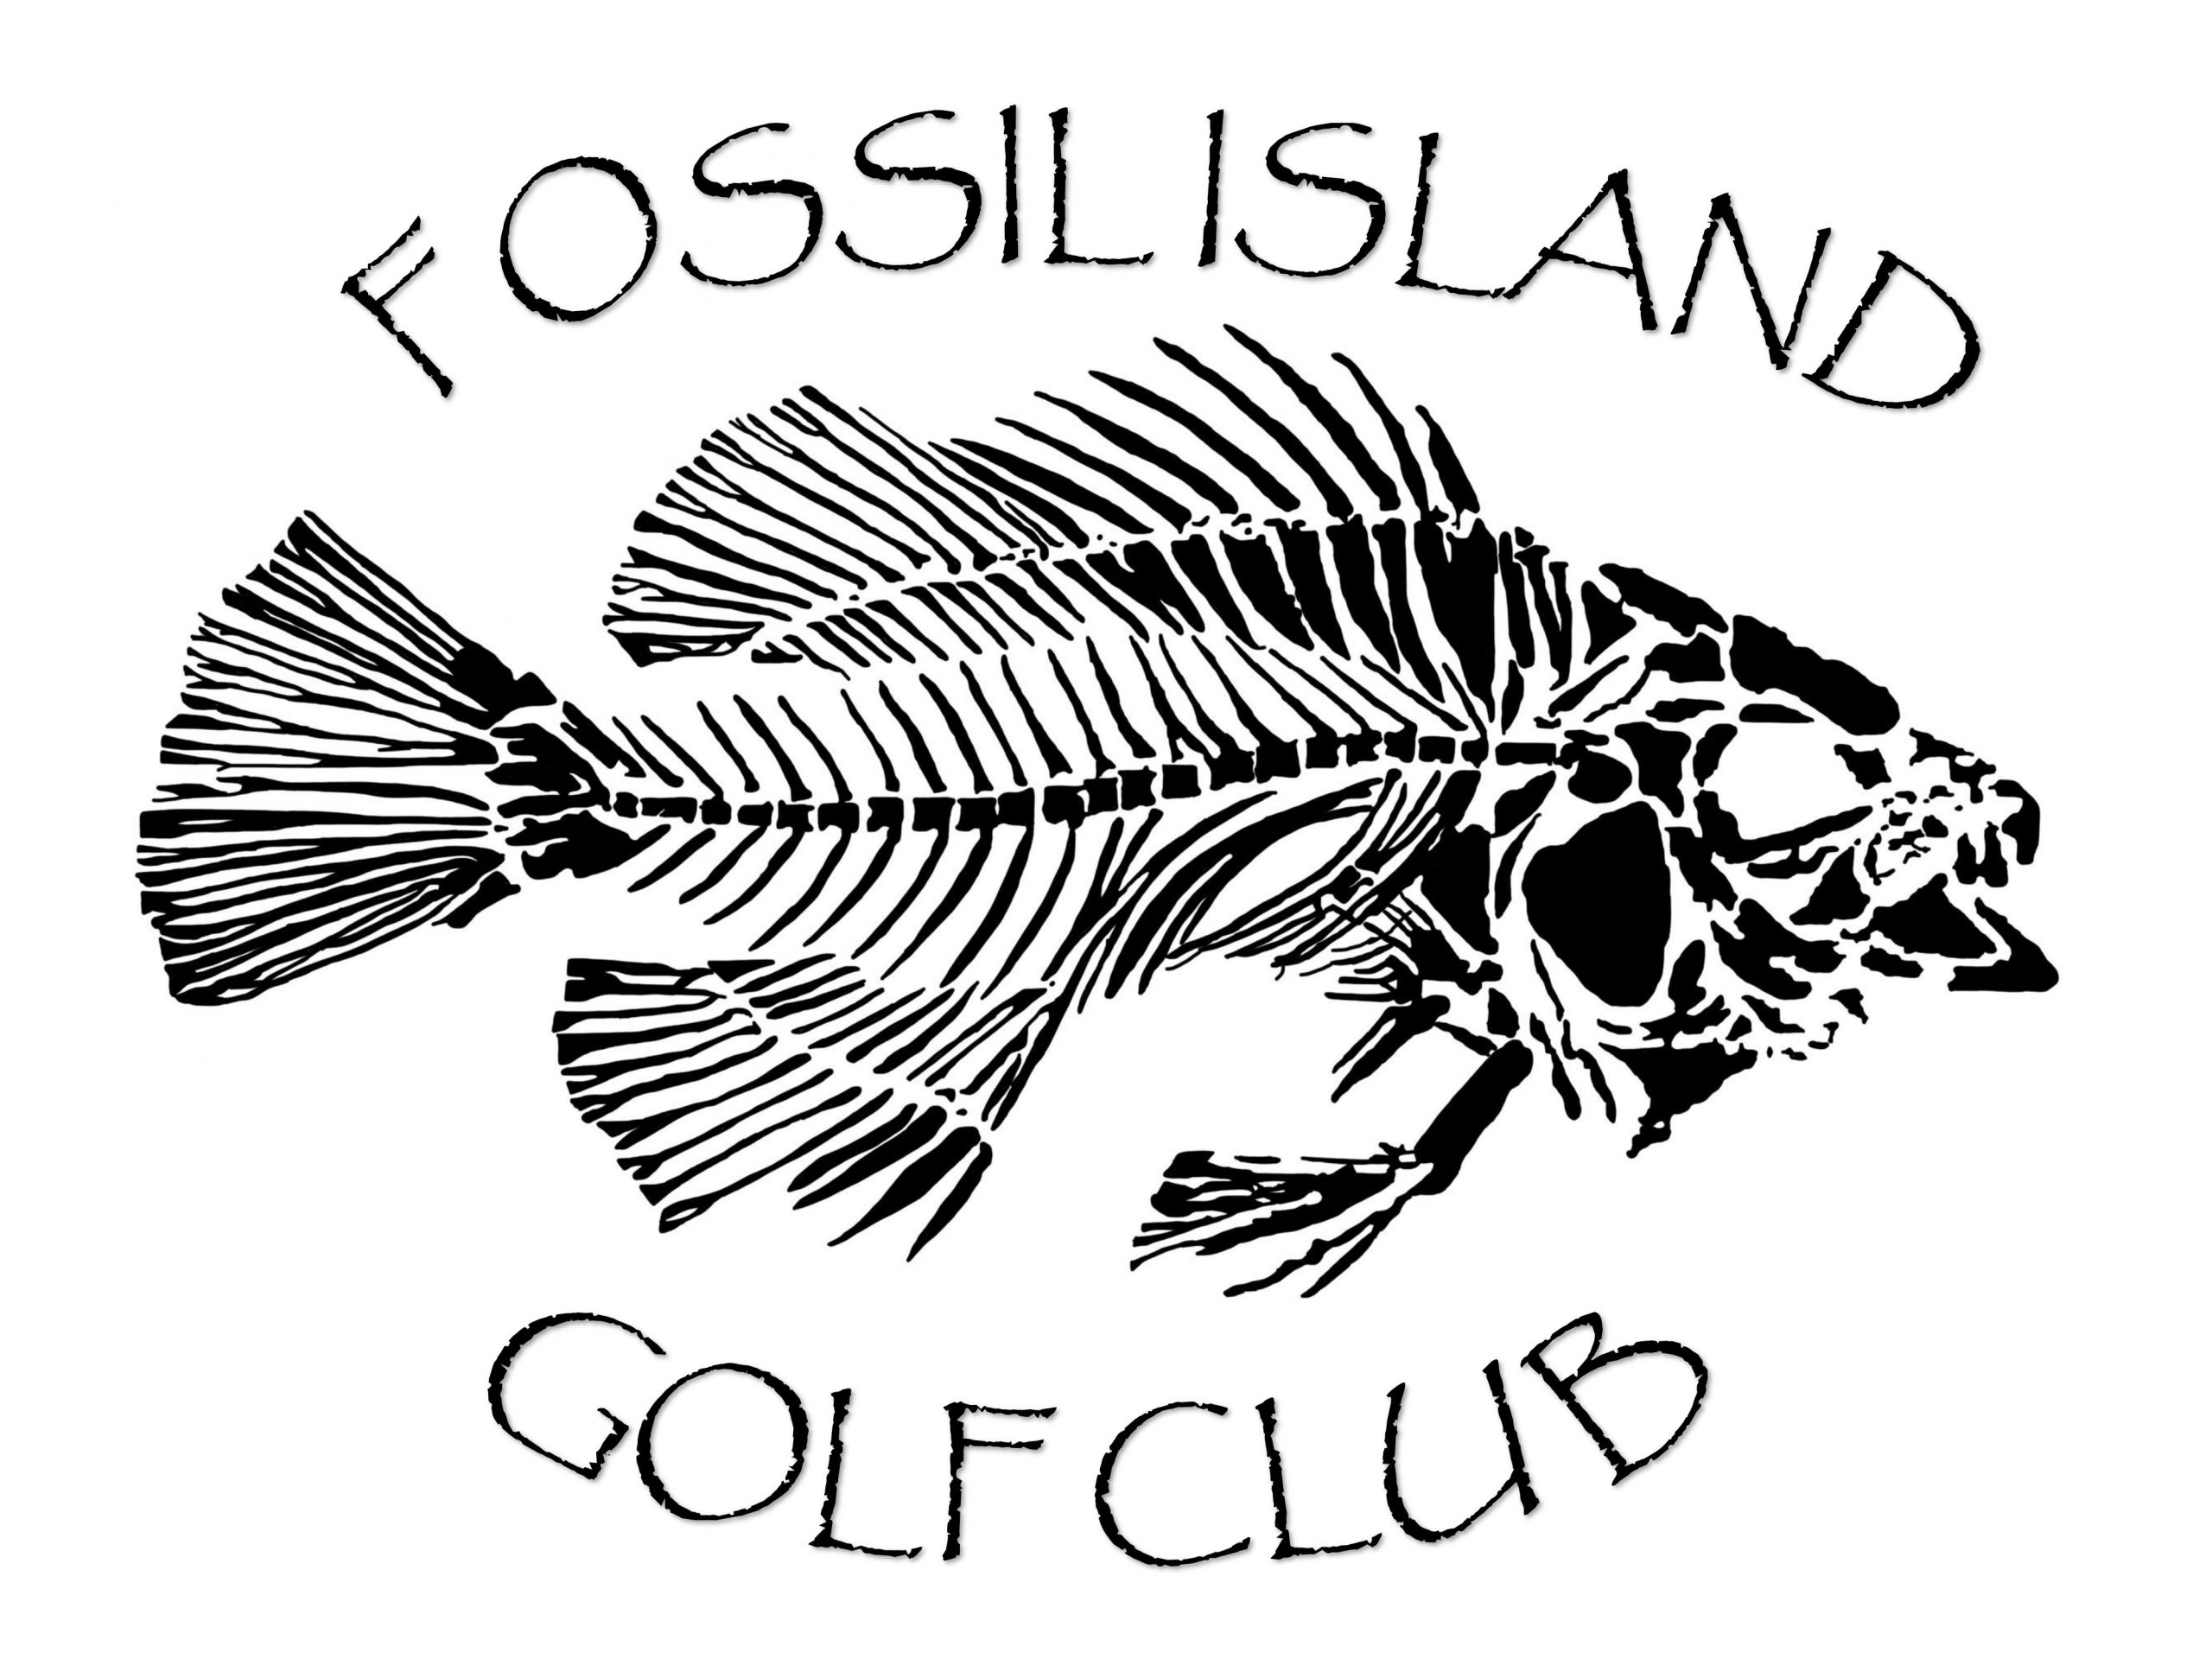 Fossil Island Golf Club